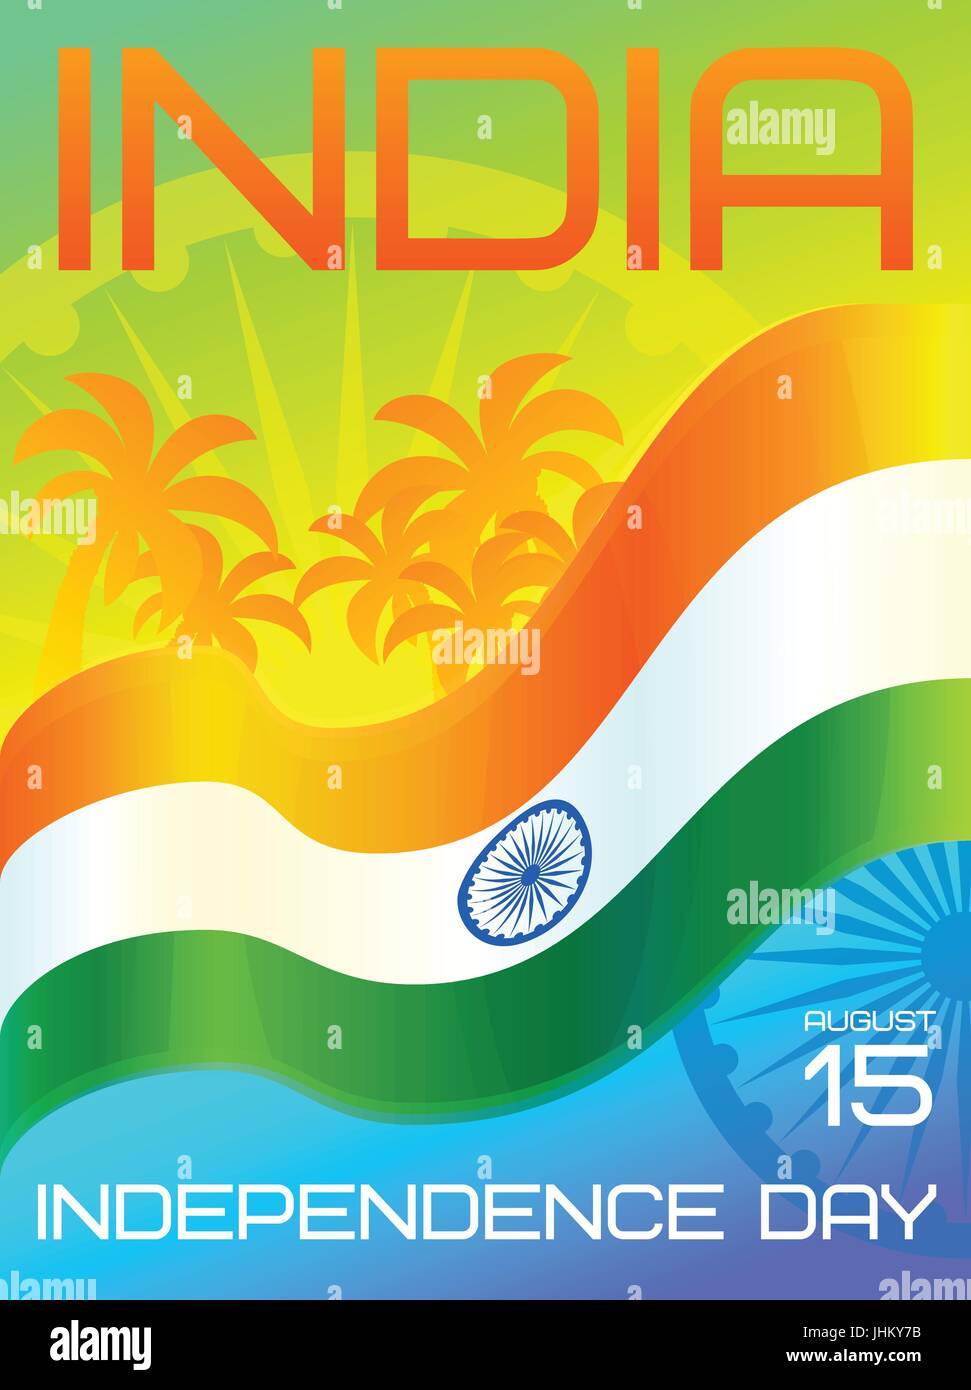 Indien-Unabhängigkeitstag Nationalfeiertag, 15.August. Vektor Grußkartenvorlage mit Ashoka-Rad, gehisst Nationalflagge von Indien und Palmen Stock Vektor